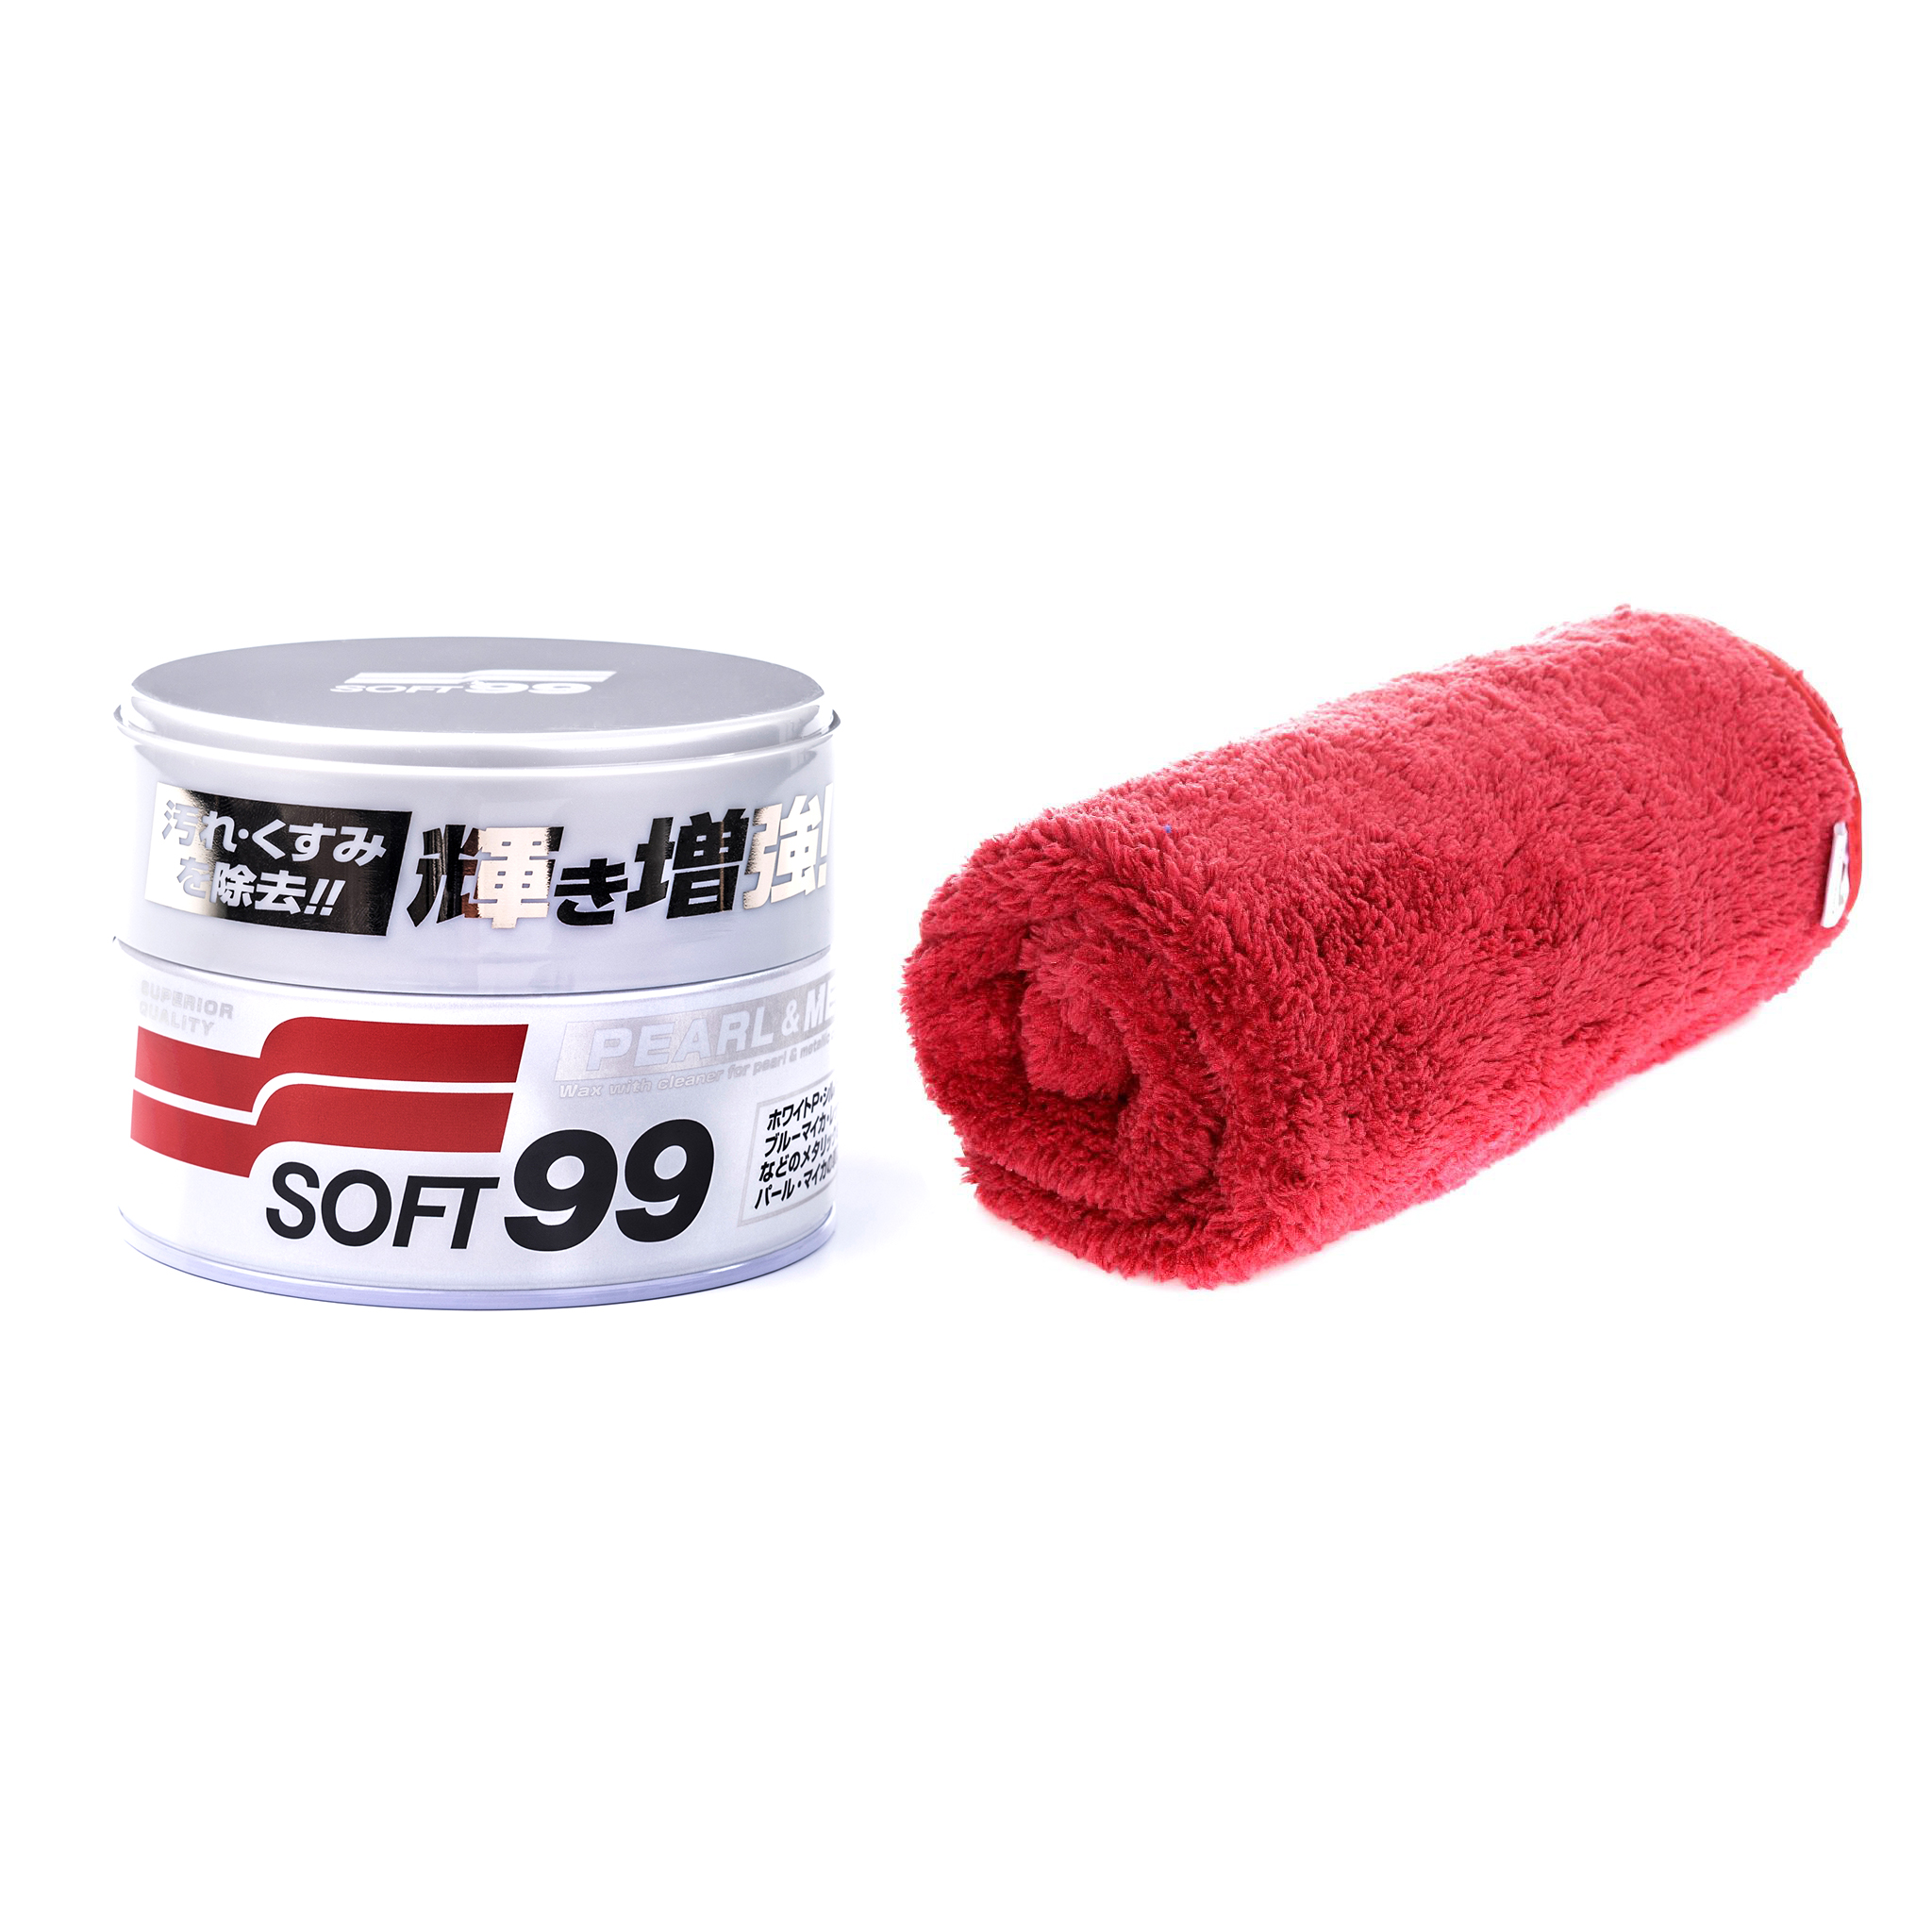 Bilvoks Soft99 Pearl & Metallic Soft Wax, 320 g, Soft99 Pearl & Metallic Soft Wax + KC Red Ruby